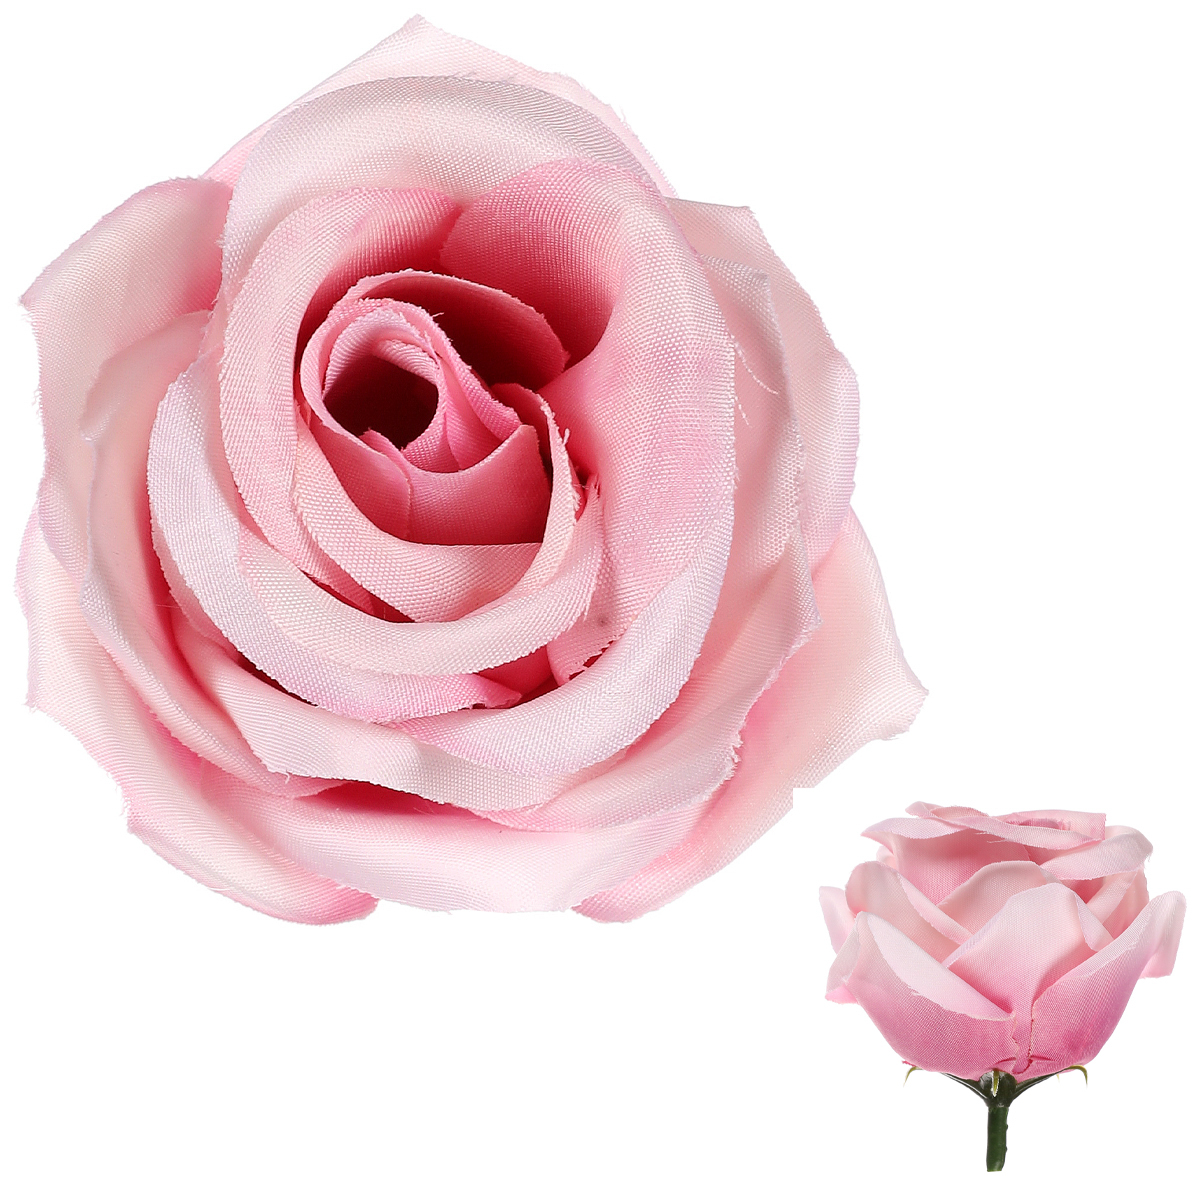 Růže, barva růžová, Květina umělá vazbová. Cena za balení 12 ks